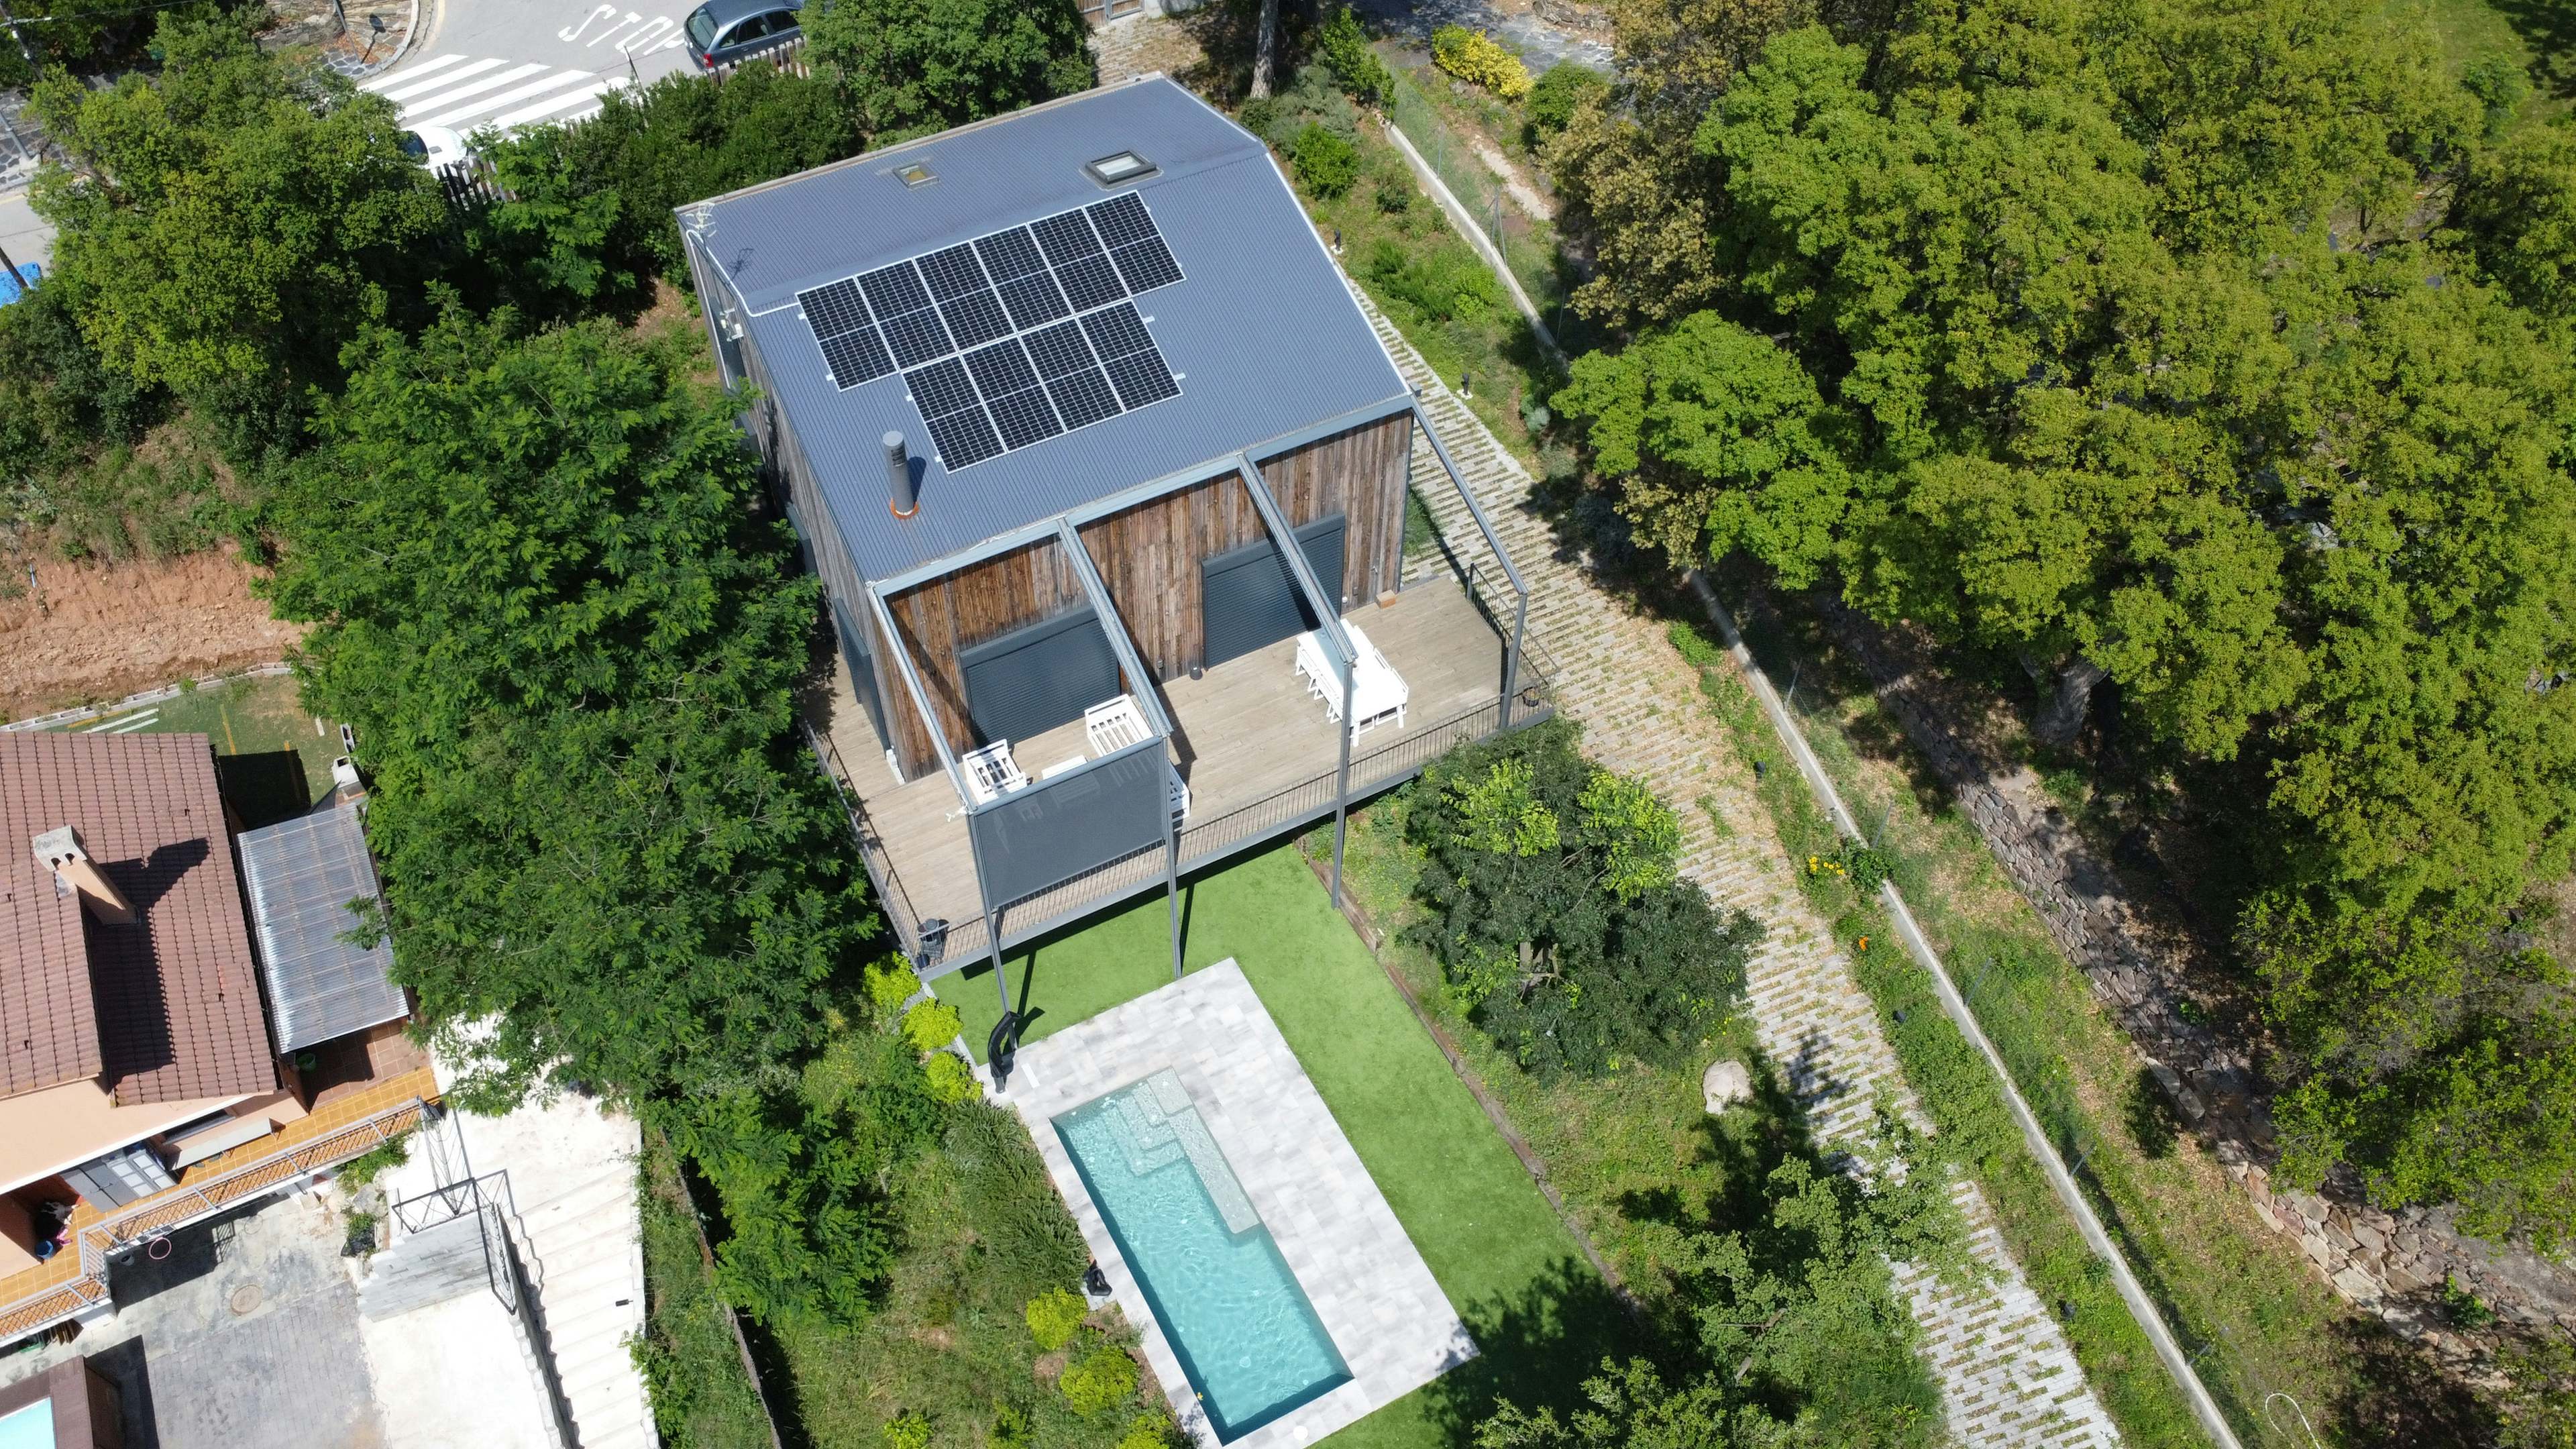 Instal·lació de plaques solars a Sant Pere de vilamajor - Barcelona